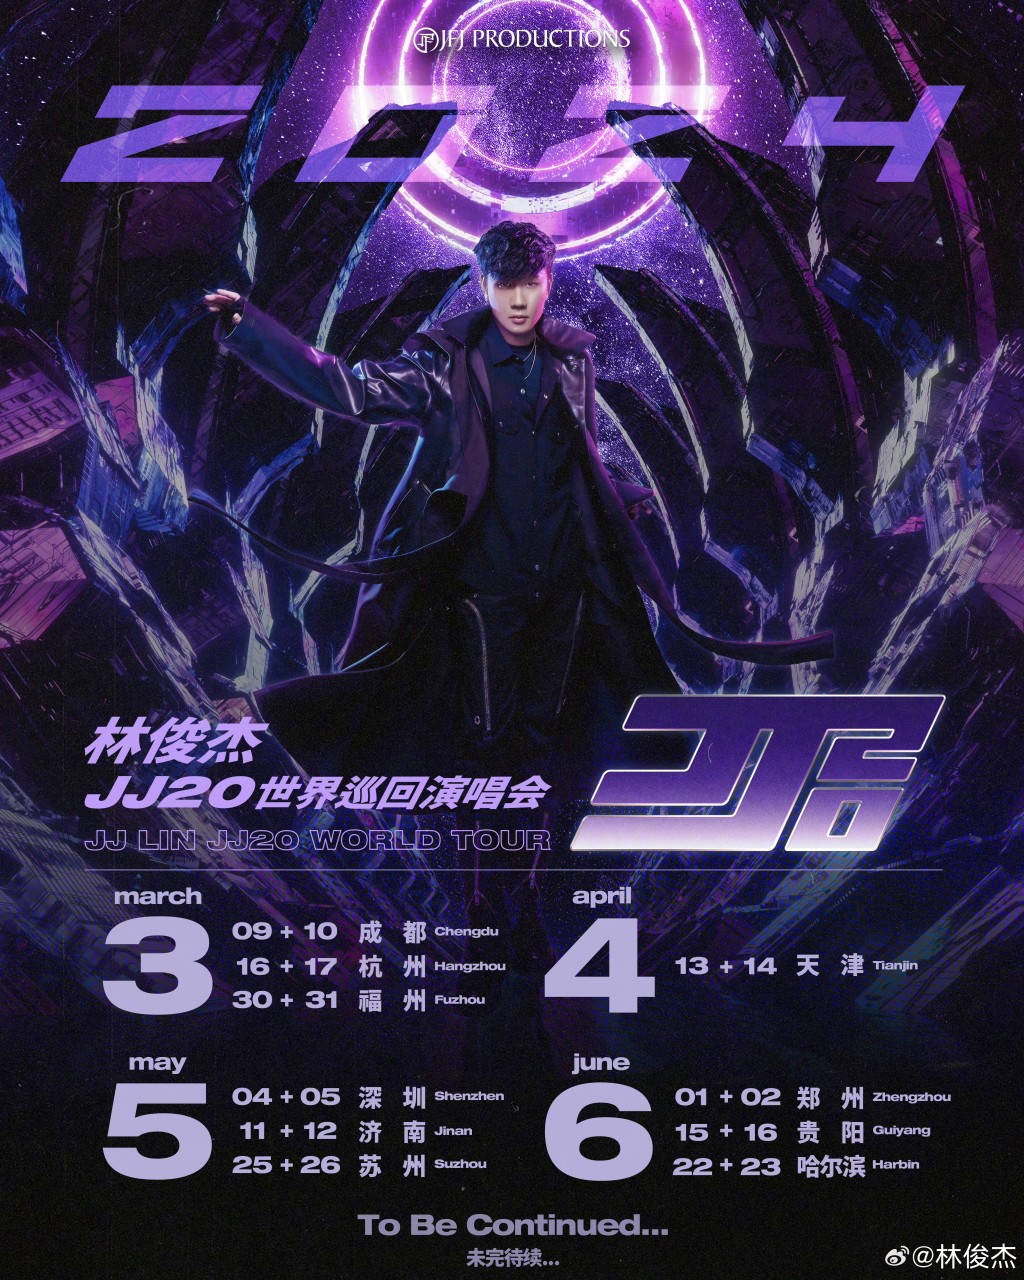 林俊杰JJ20世界巡回演唱会宣传海报。